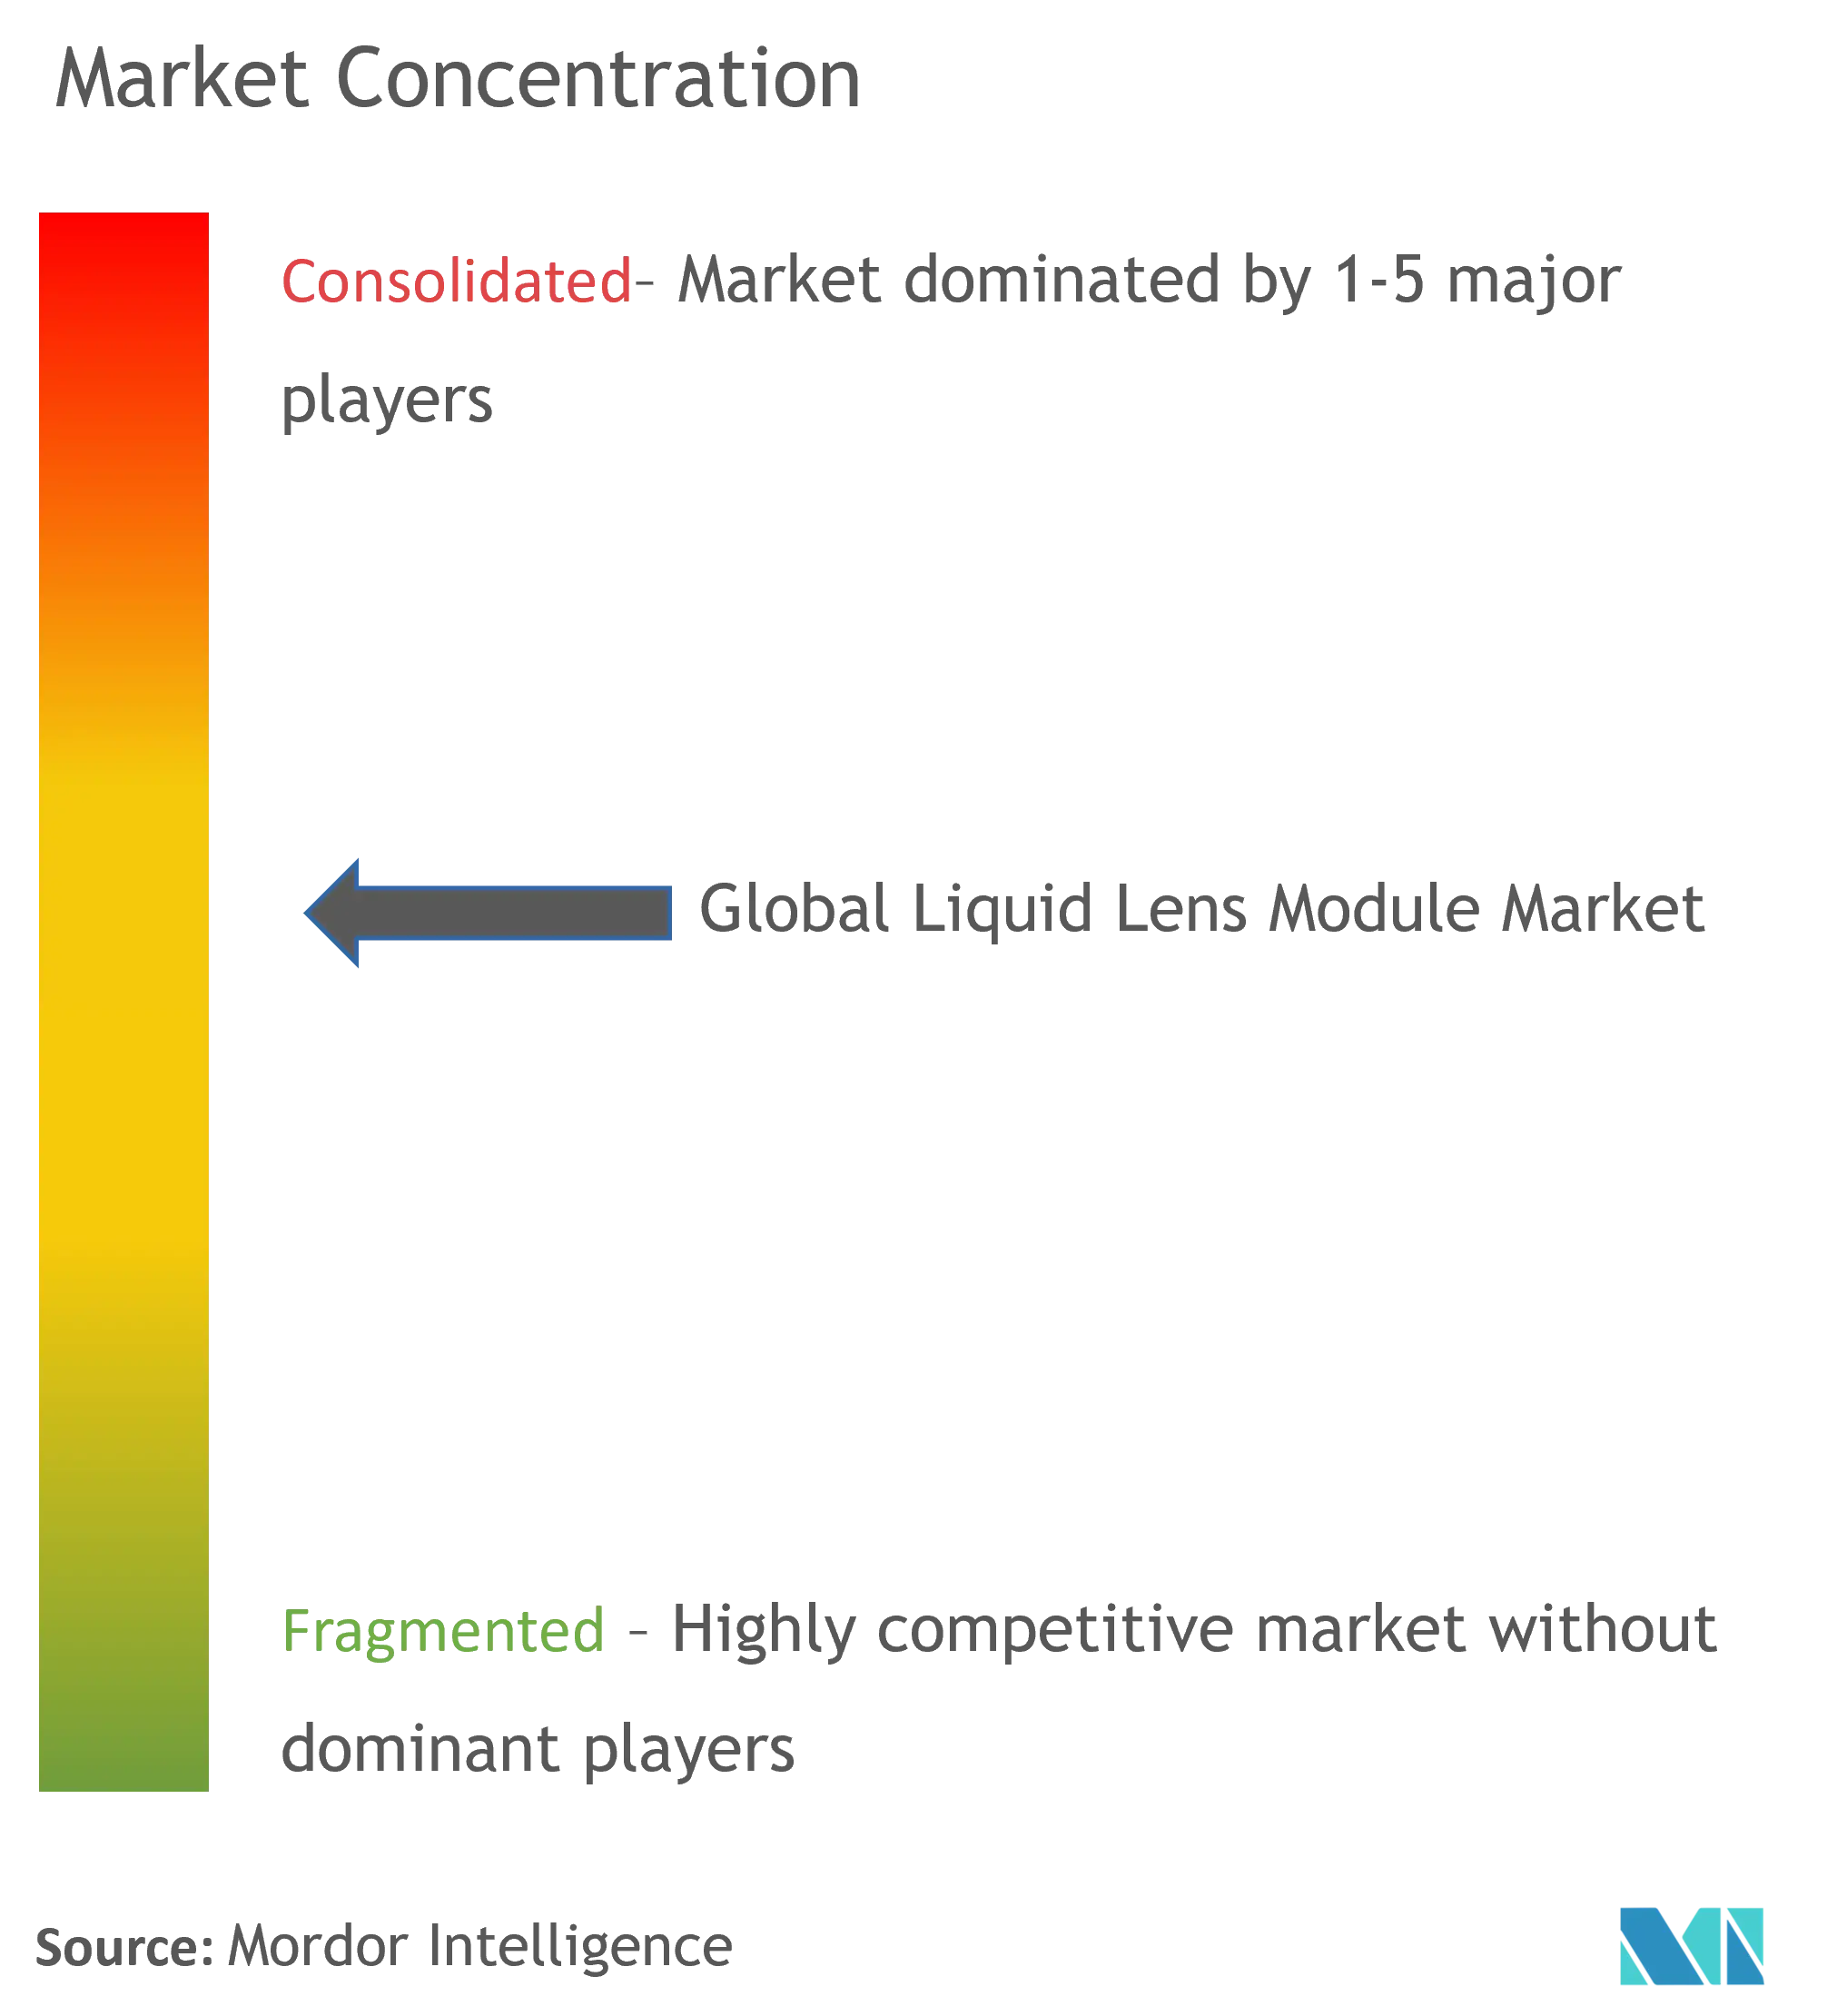 Liquid Lens Modules Market Concentration